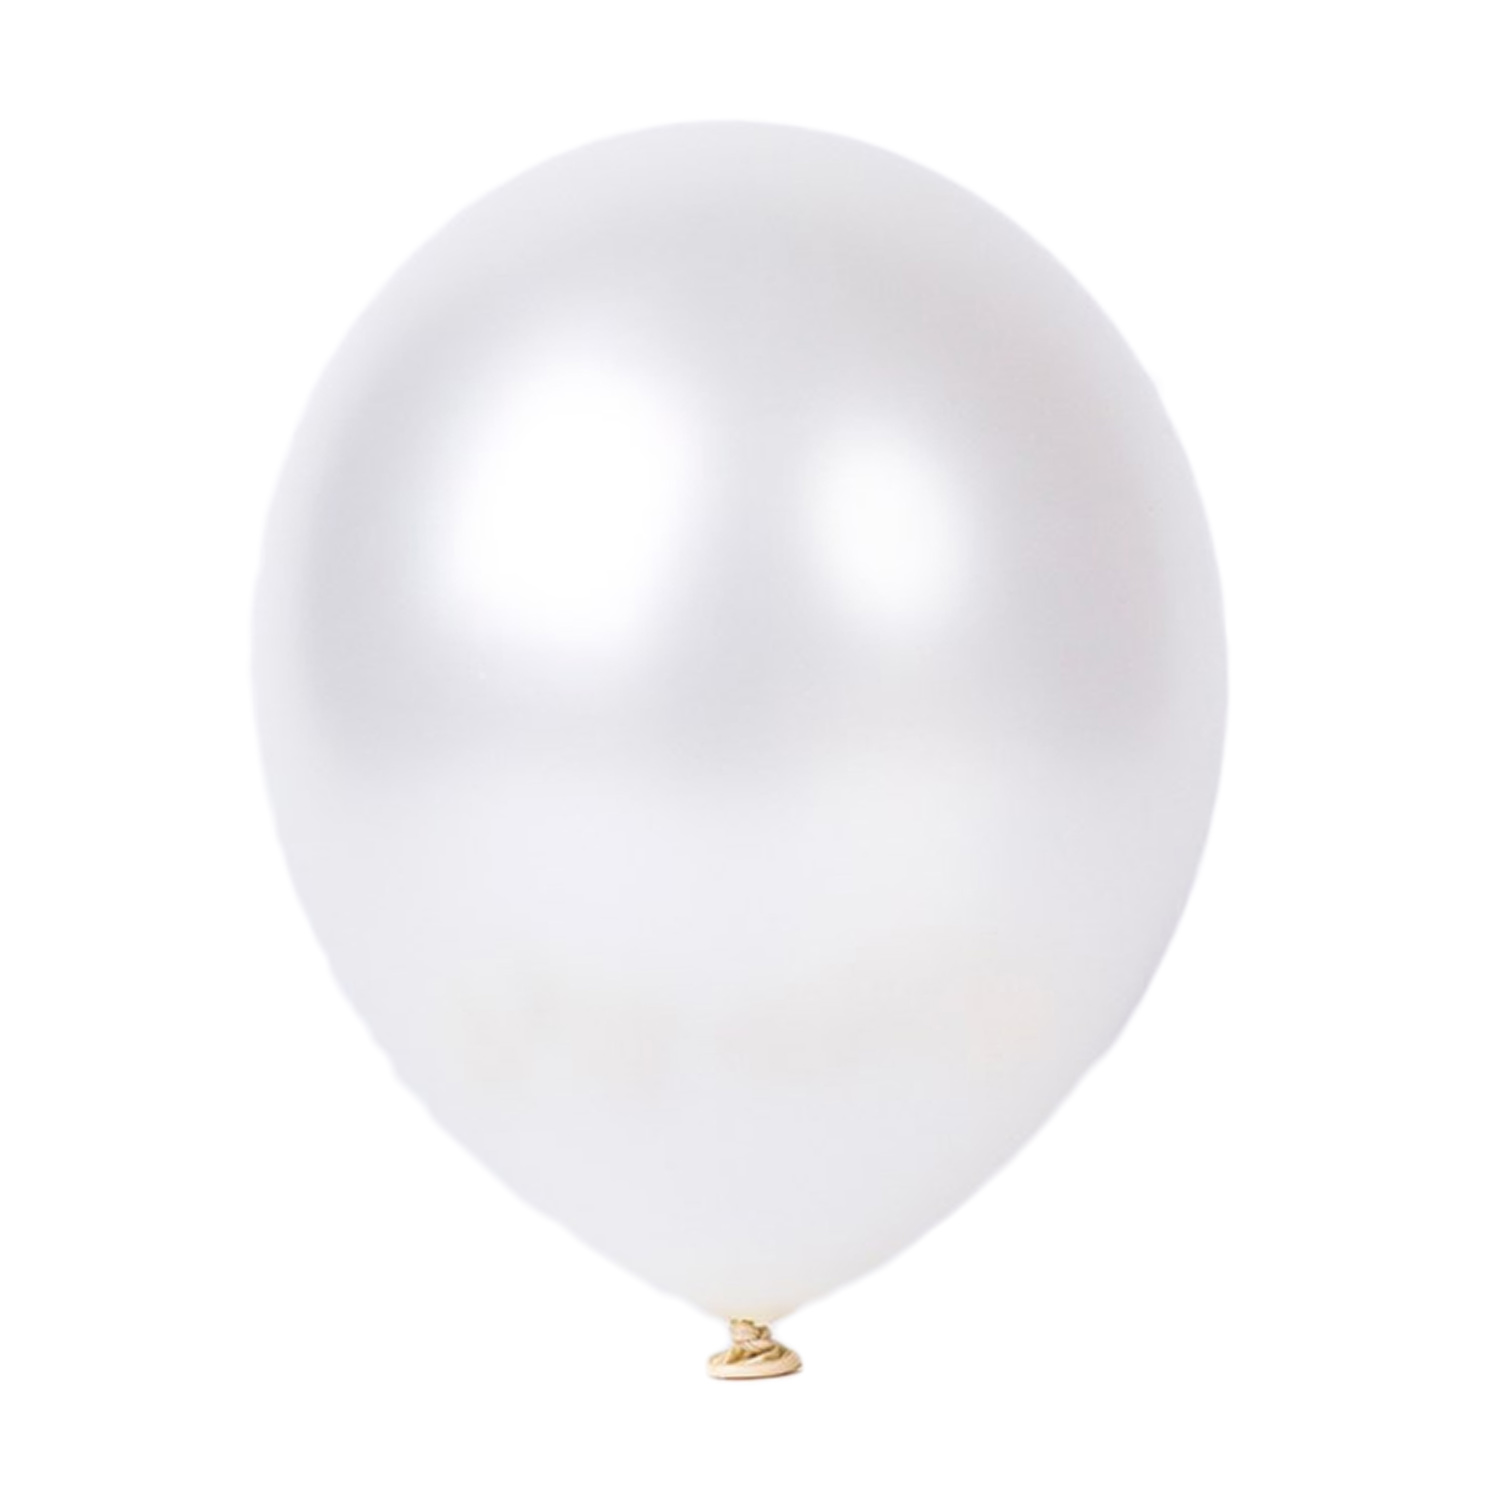 100er SET - Latex Luftballon - 12inch - Weiß - Metallic (glänzend)